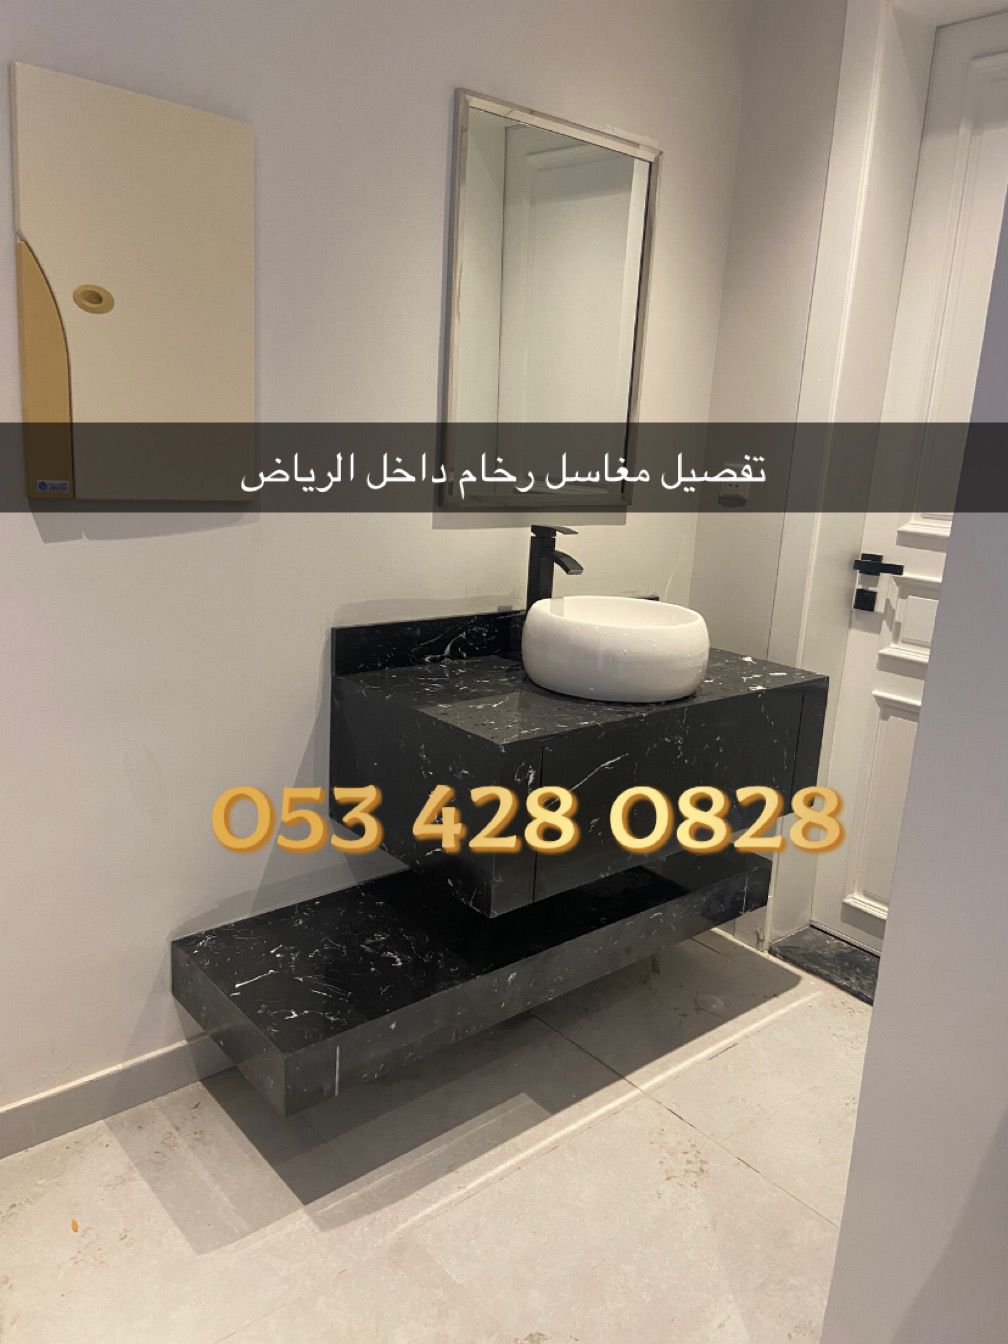 مغاسل رخام – مغاسل رخام حمامات في الرياض